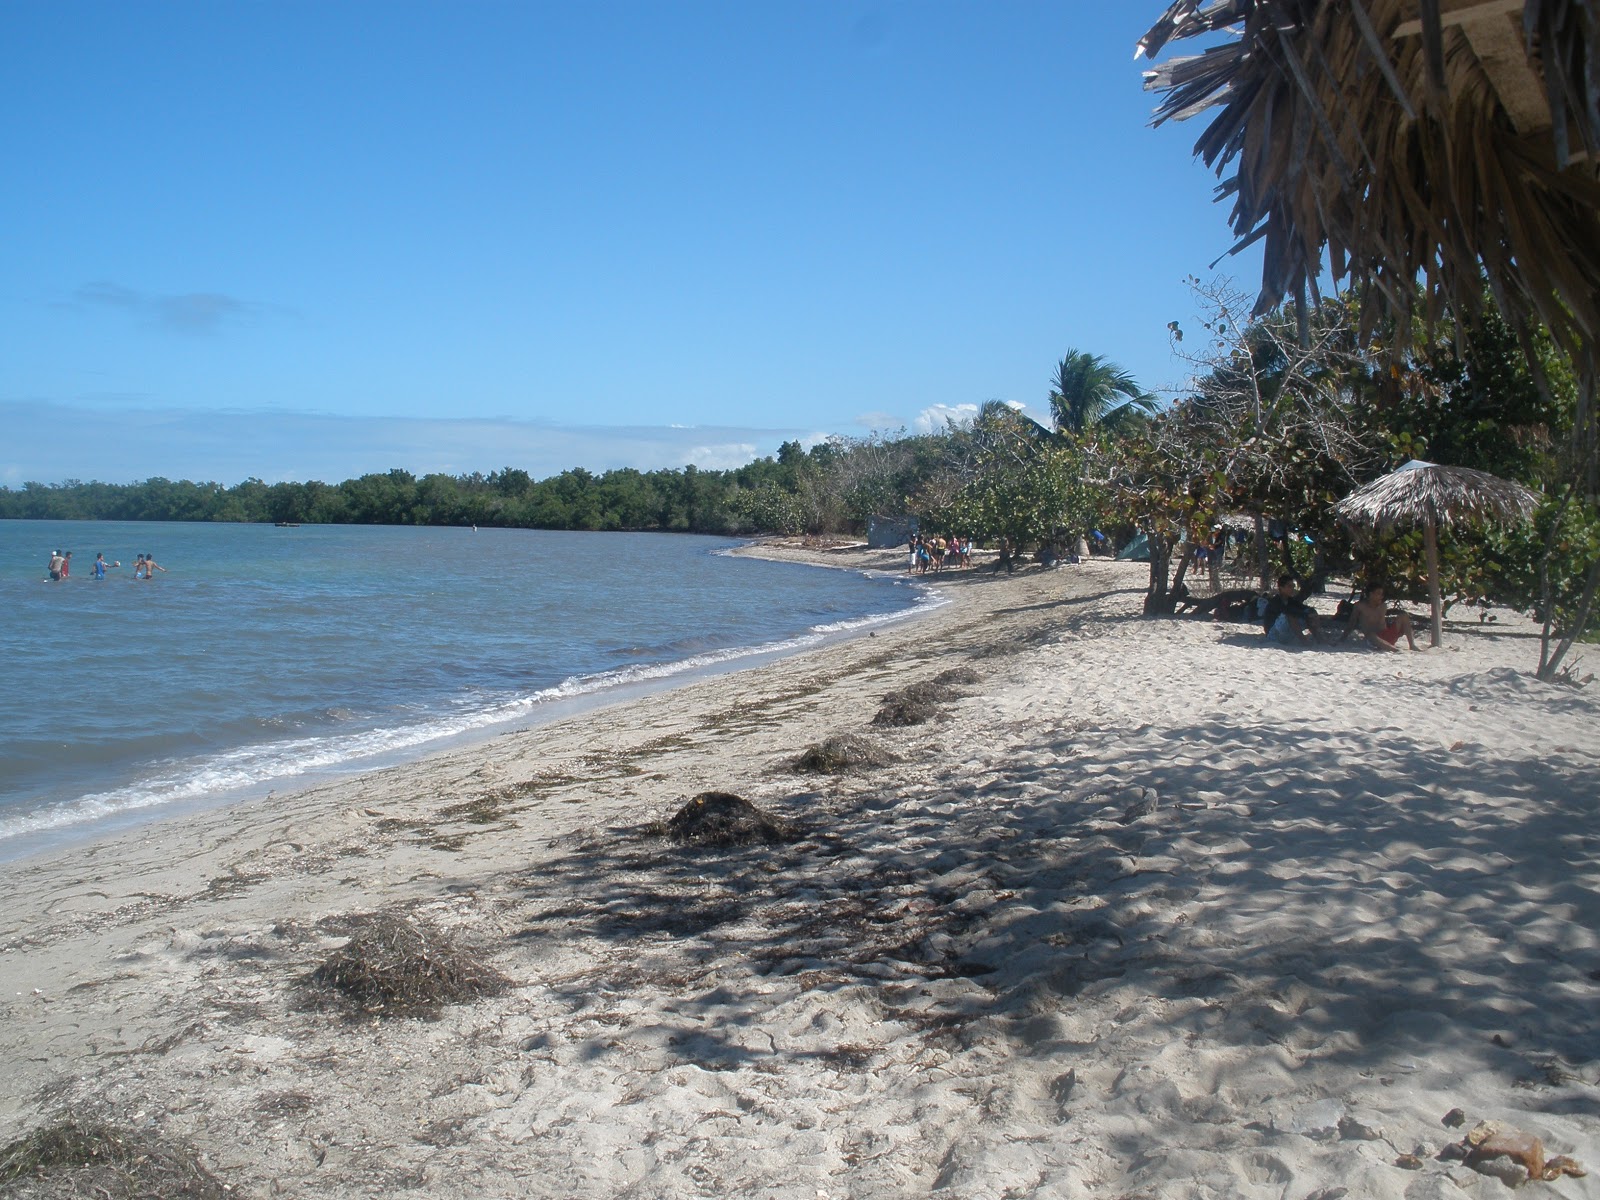 Playa de Media Luna'in fotoğrafı parlak kum yüzey ile